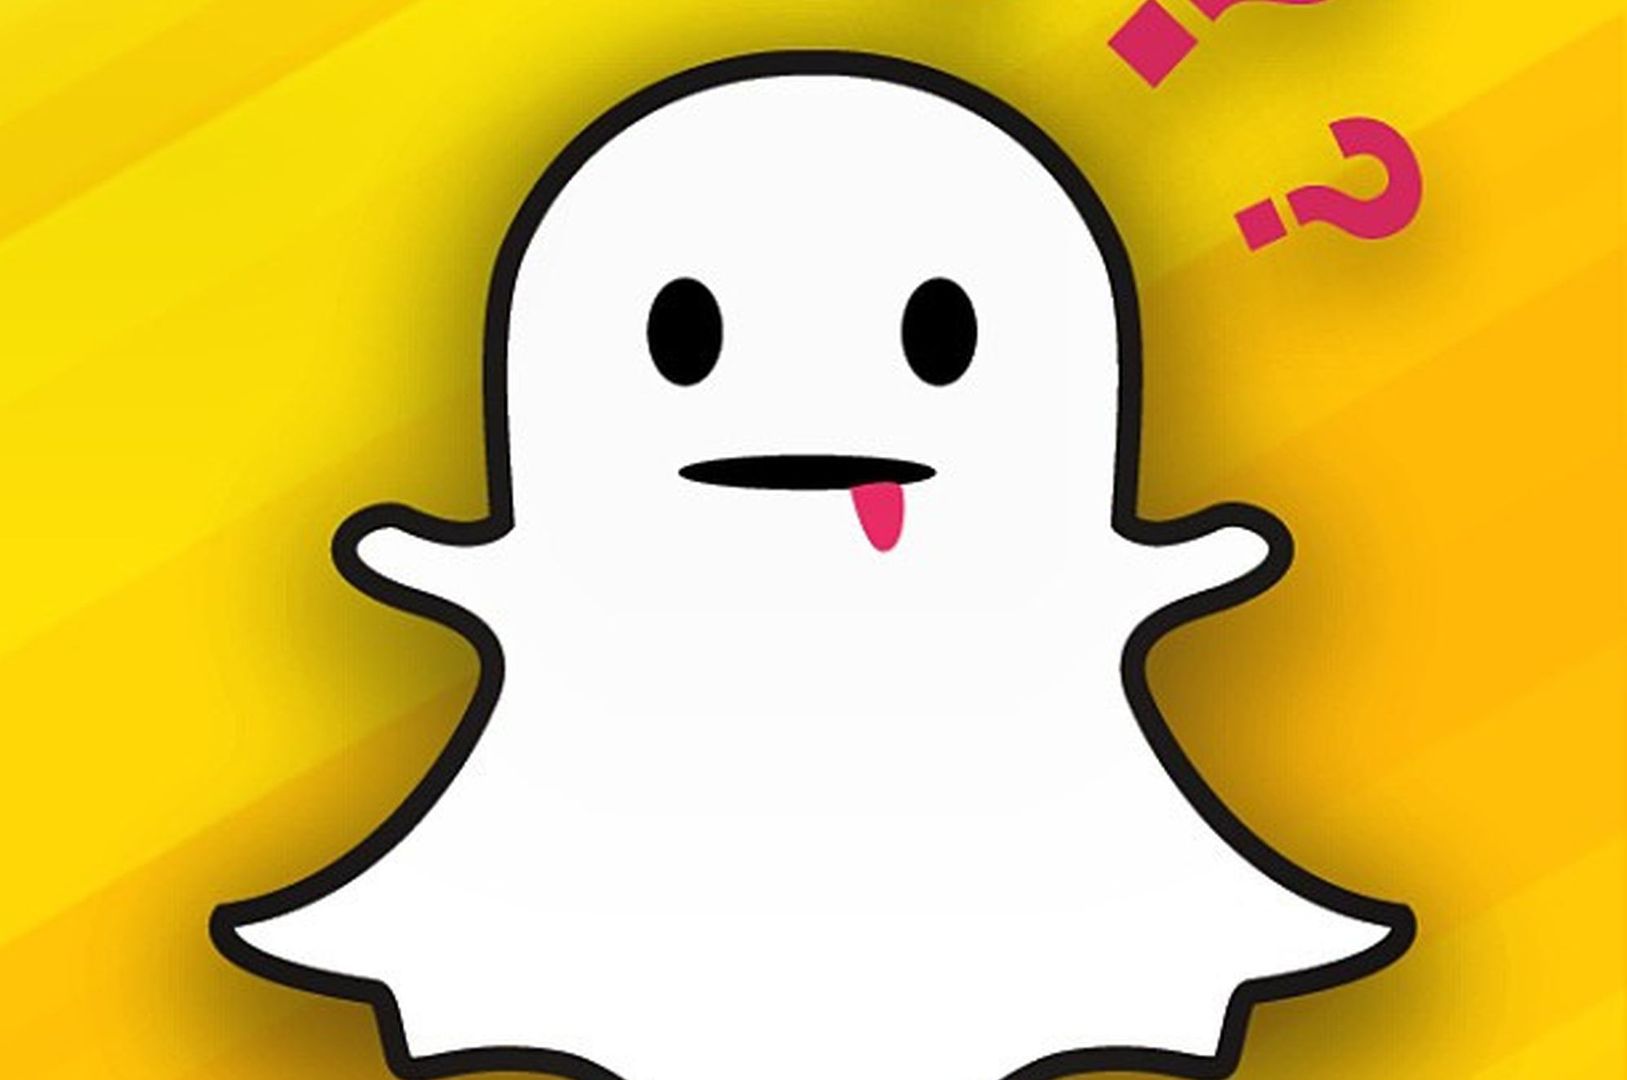 Facebook chce wygryźć z rynku Snapchata? Będzie spora rewolucja